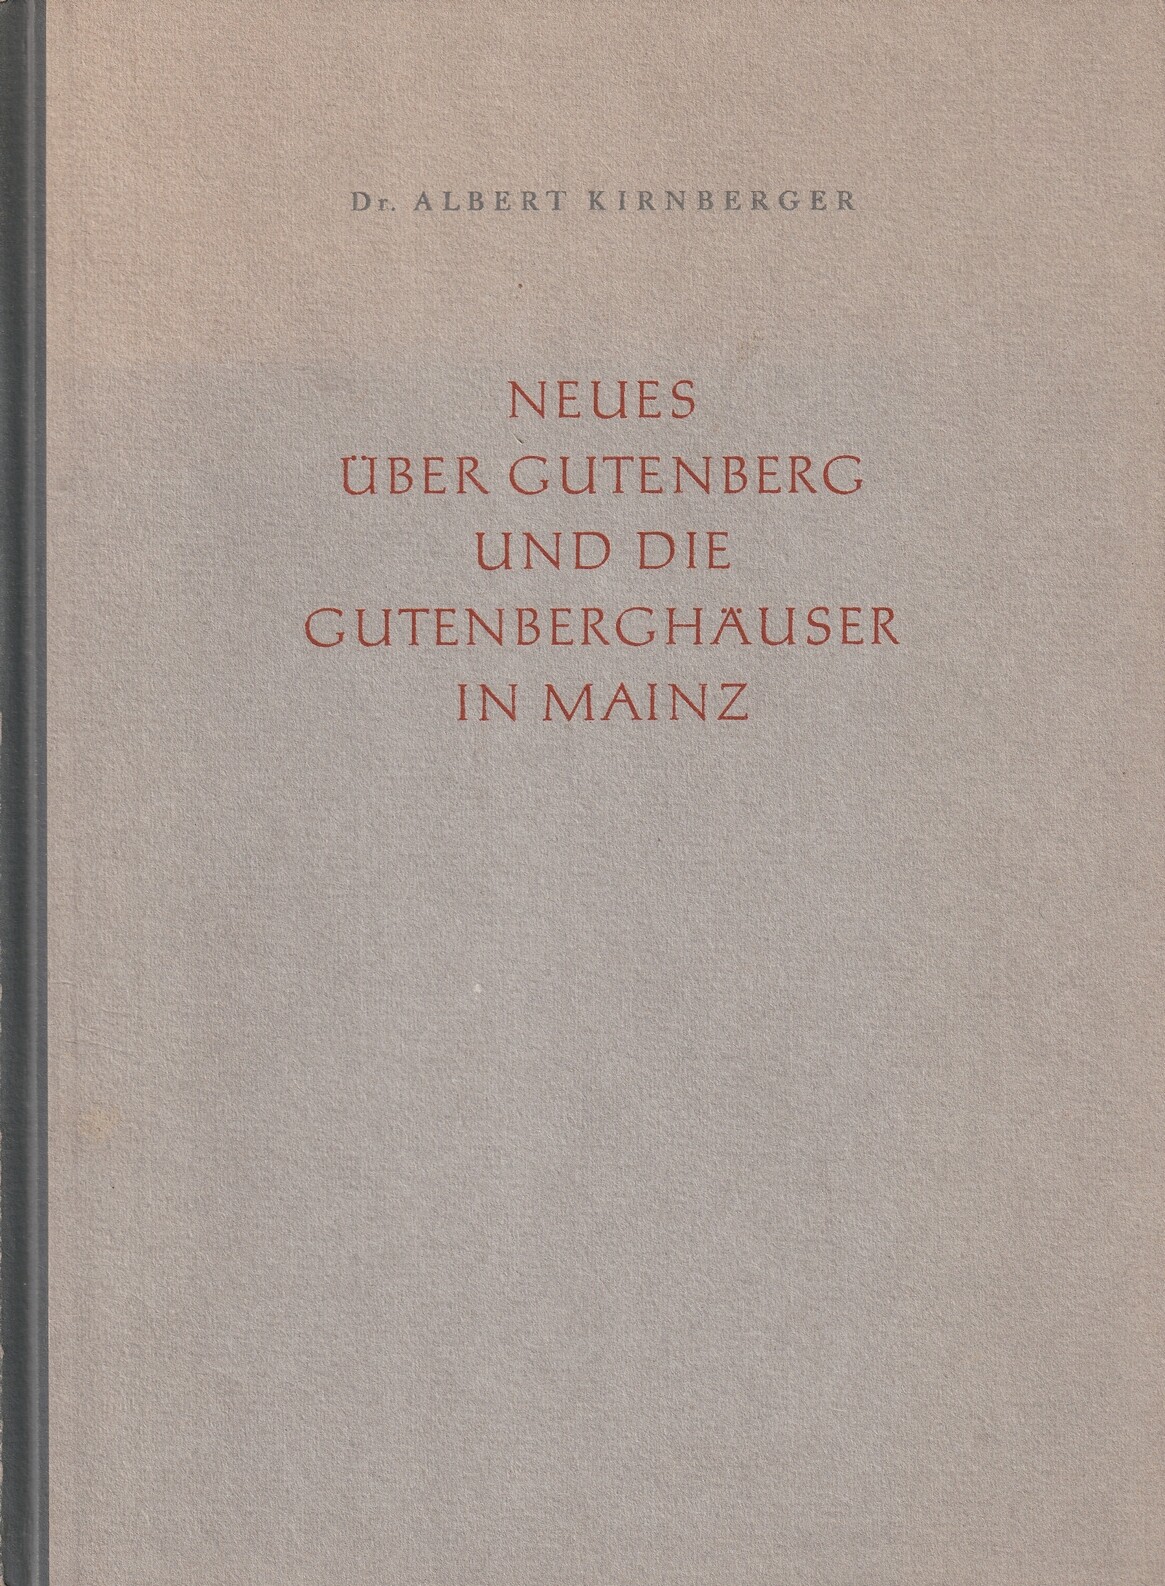 Neues über Gutenberg und die Gutenberghäuser in Mainz (Kulturverein Guntersblum CC BY-NC-SA)